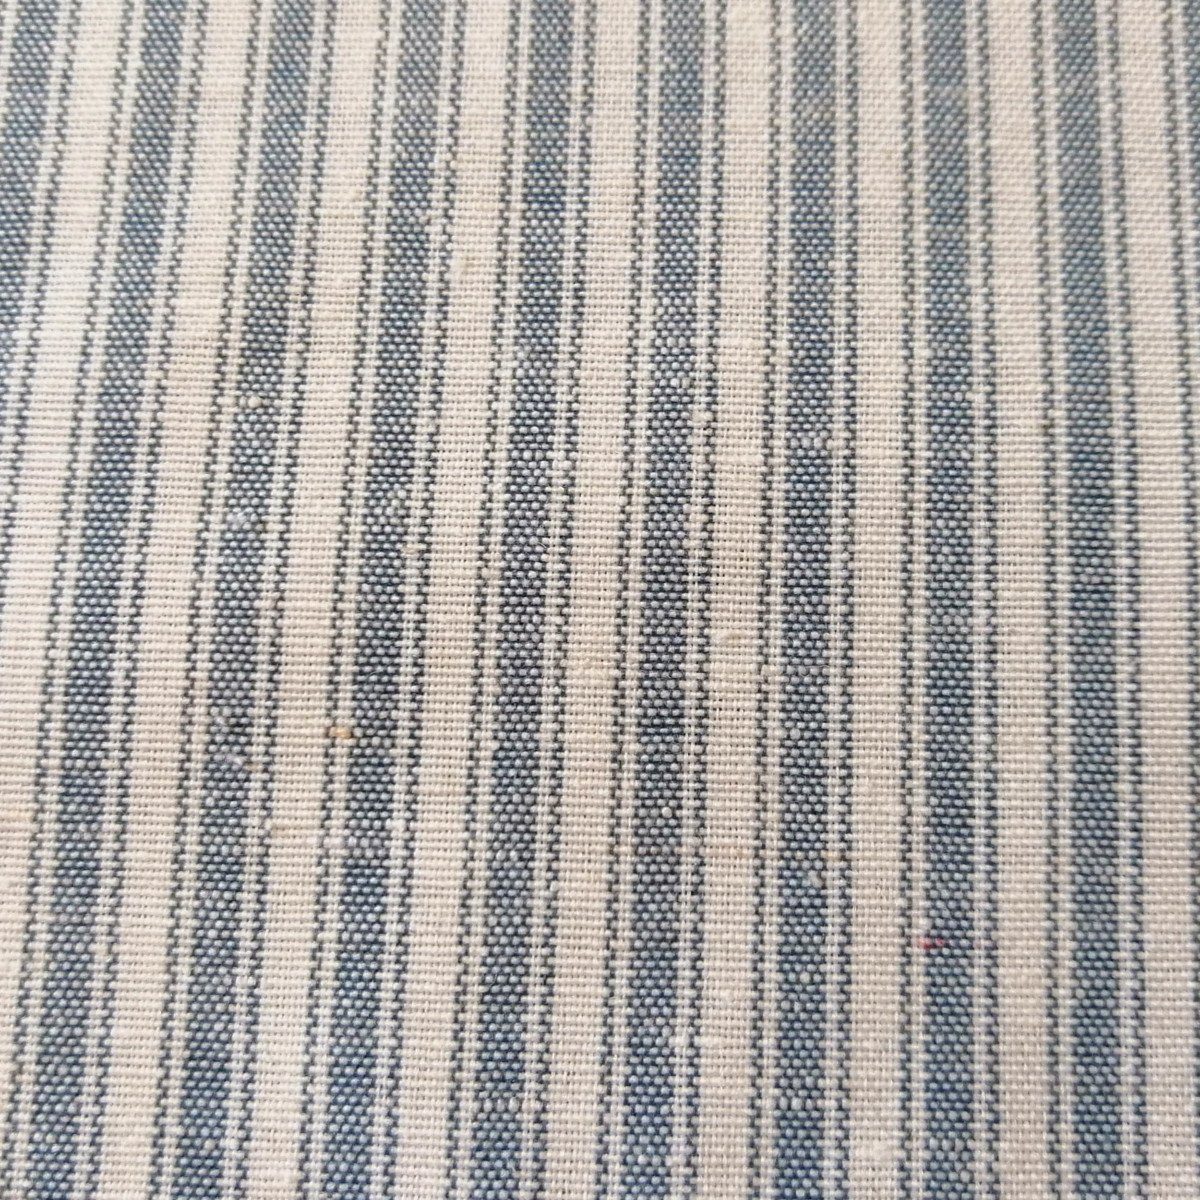 Mit Tischdeko Tischläufer dekoriert Liebe Tischläufer (40x140cm) Blau gestreift